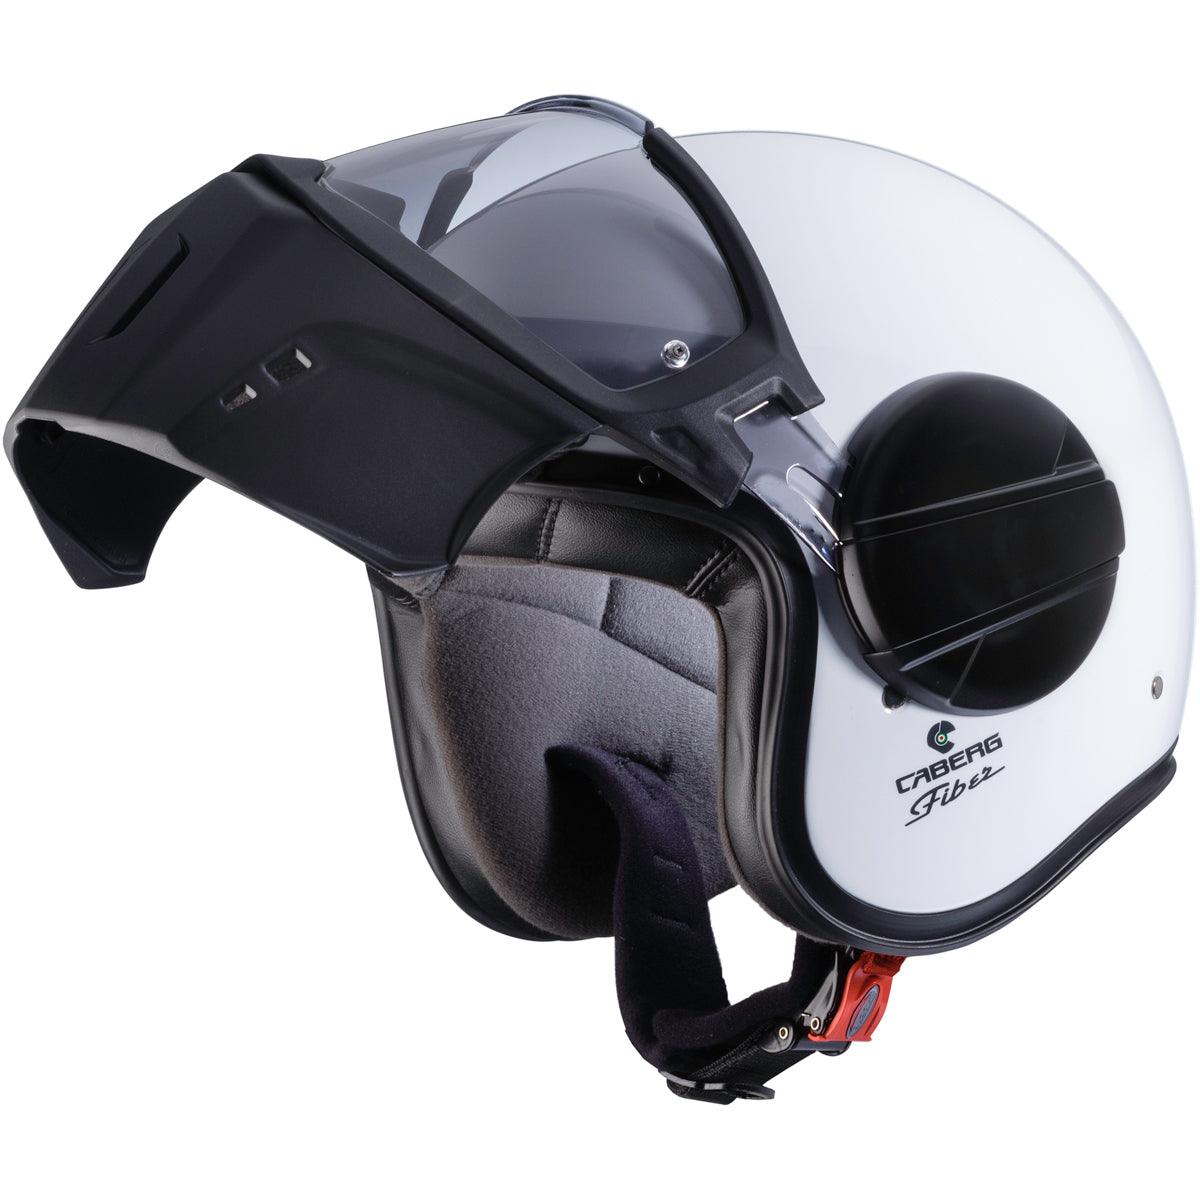 Caberg Ghost Helmet - White - getgearedshop